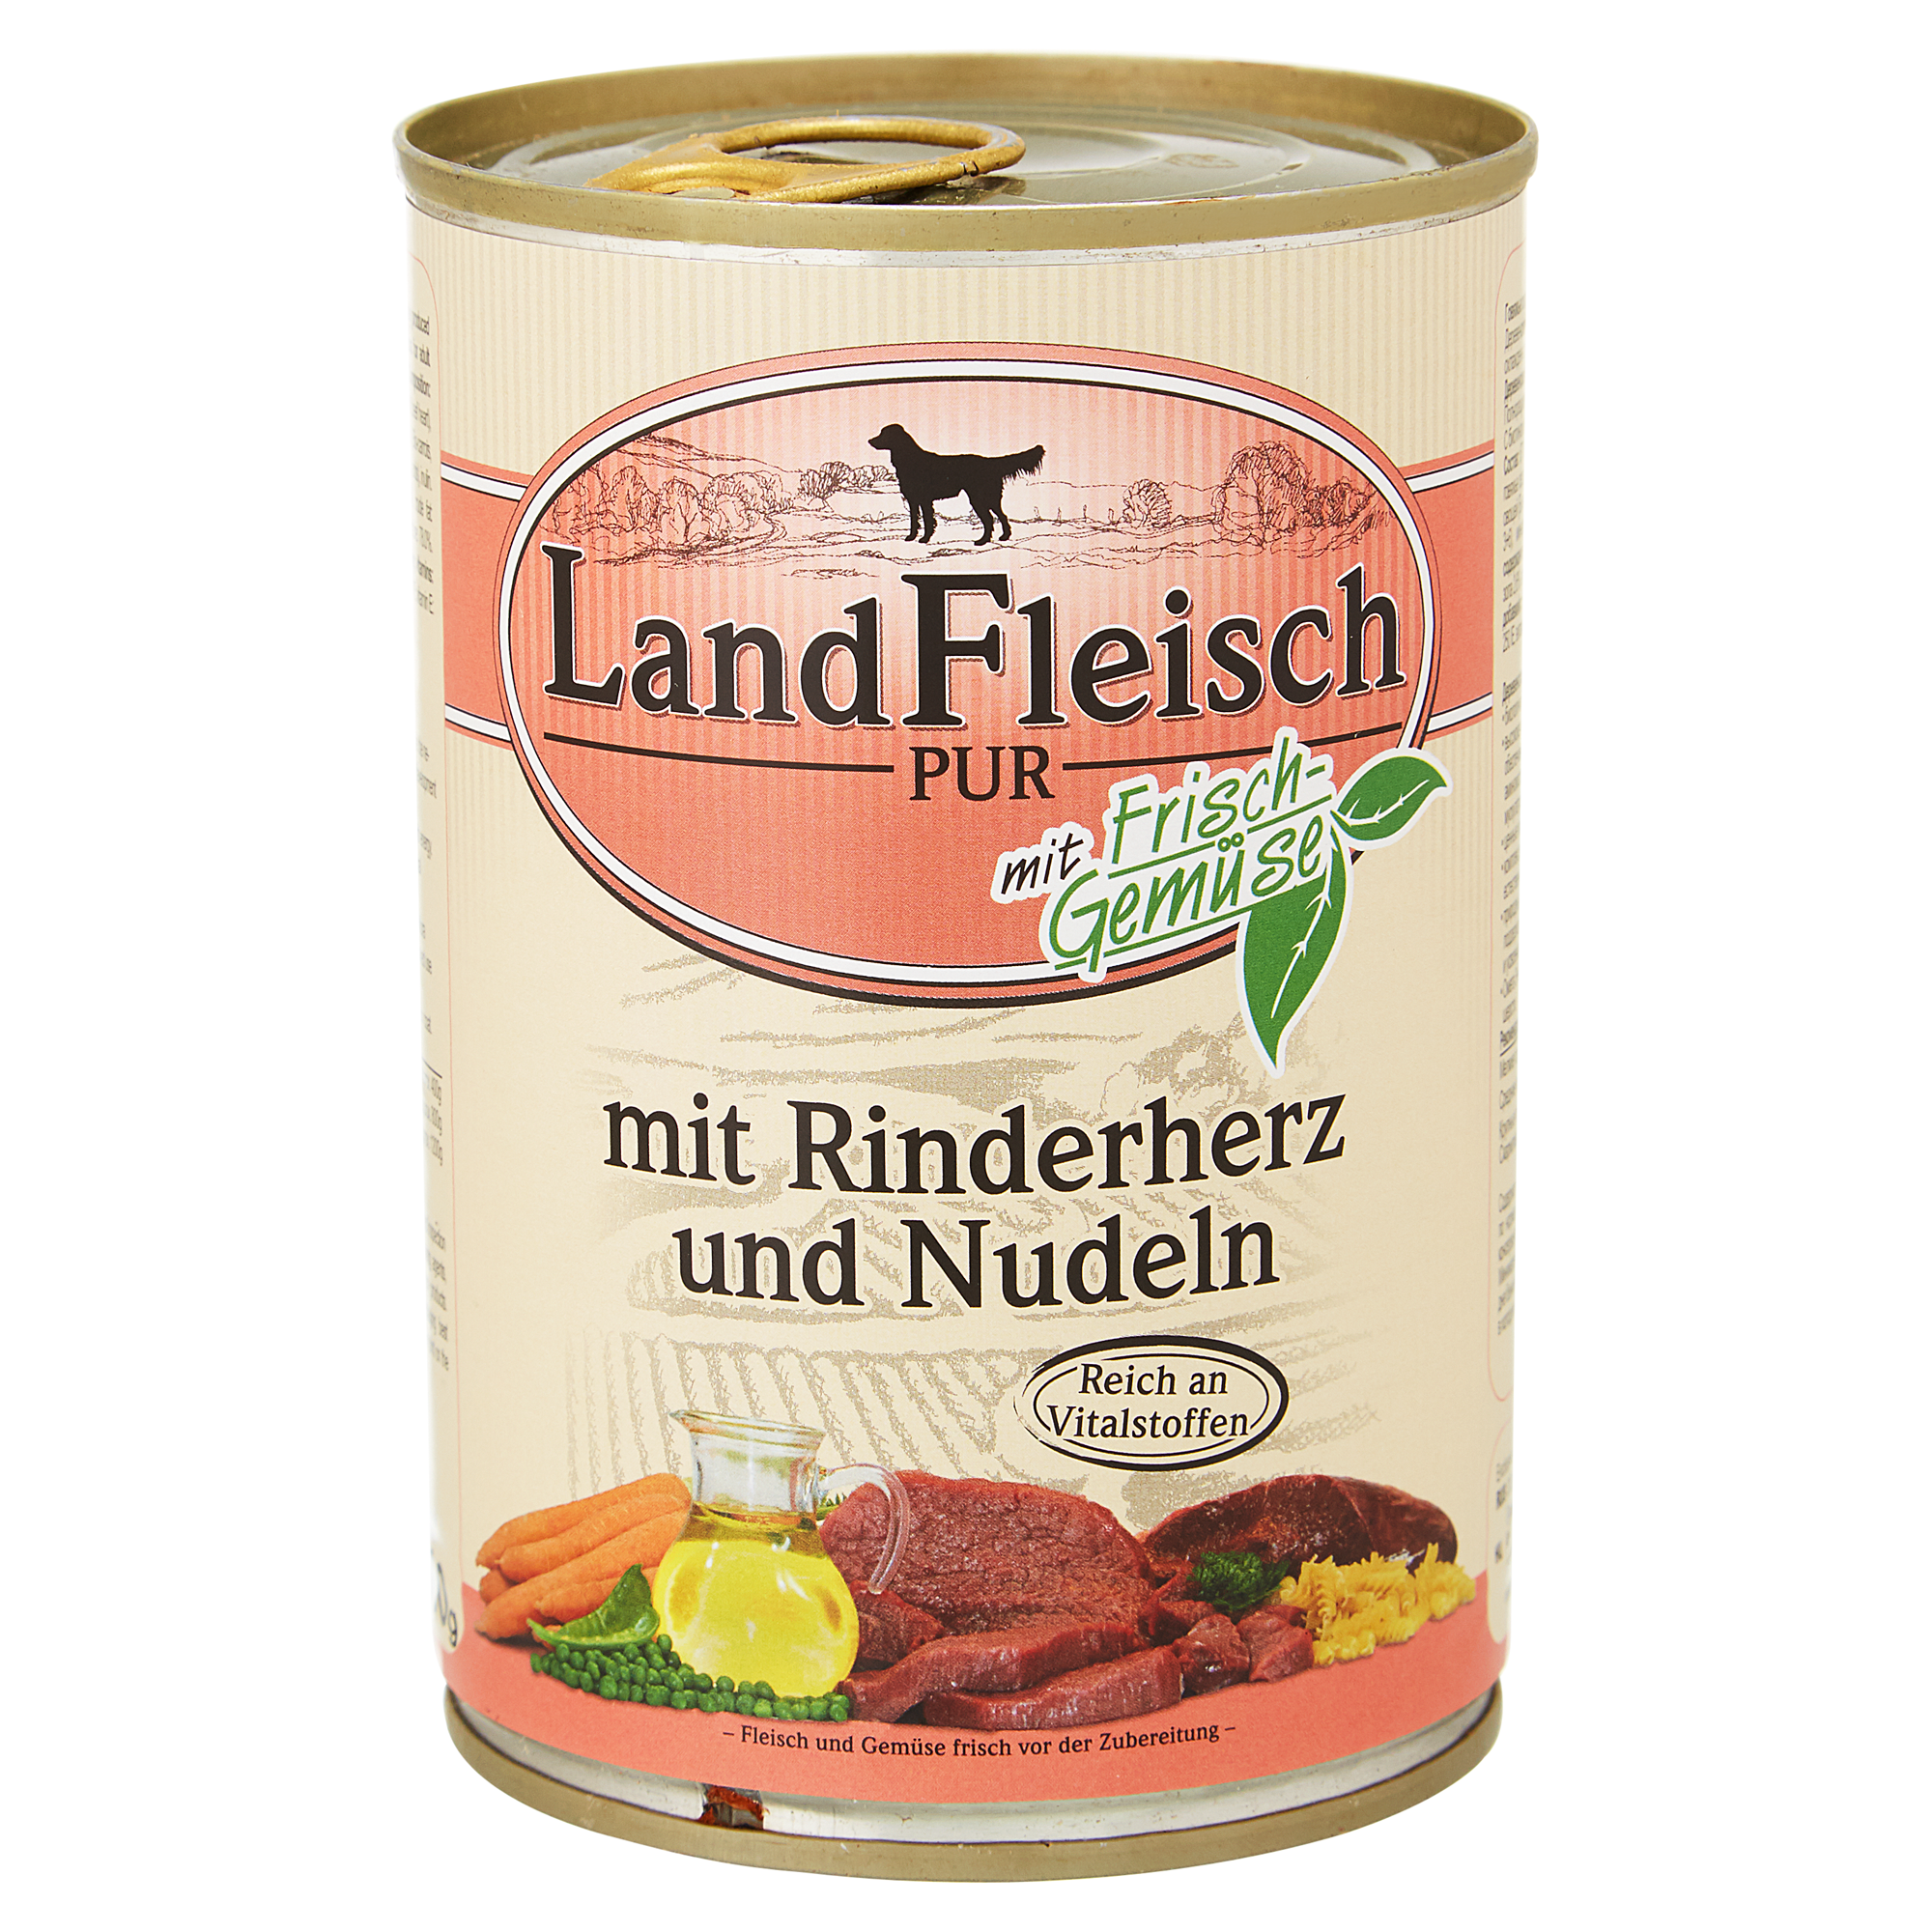 Hundenassfutter "Pur" mit Frischgemüse/Rinderherz/Nudeln 400 g + product picture